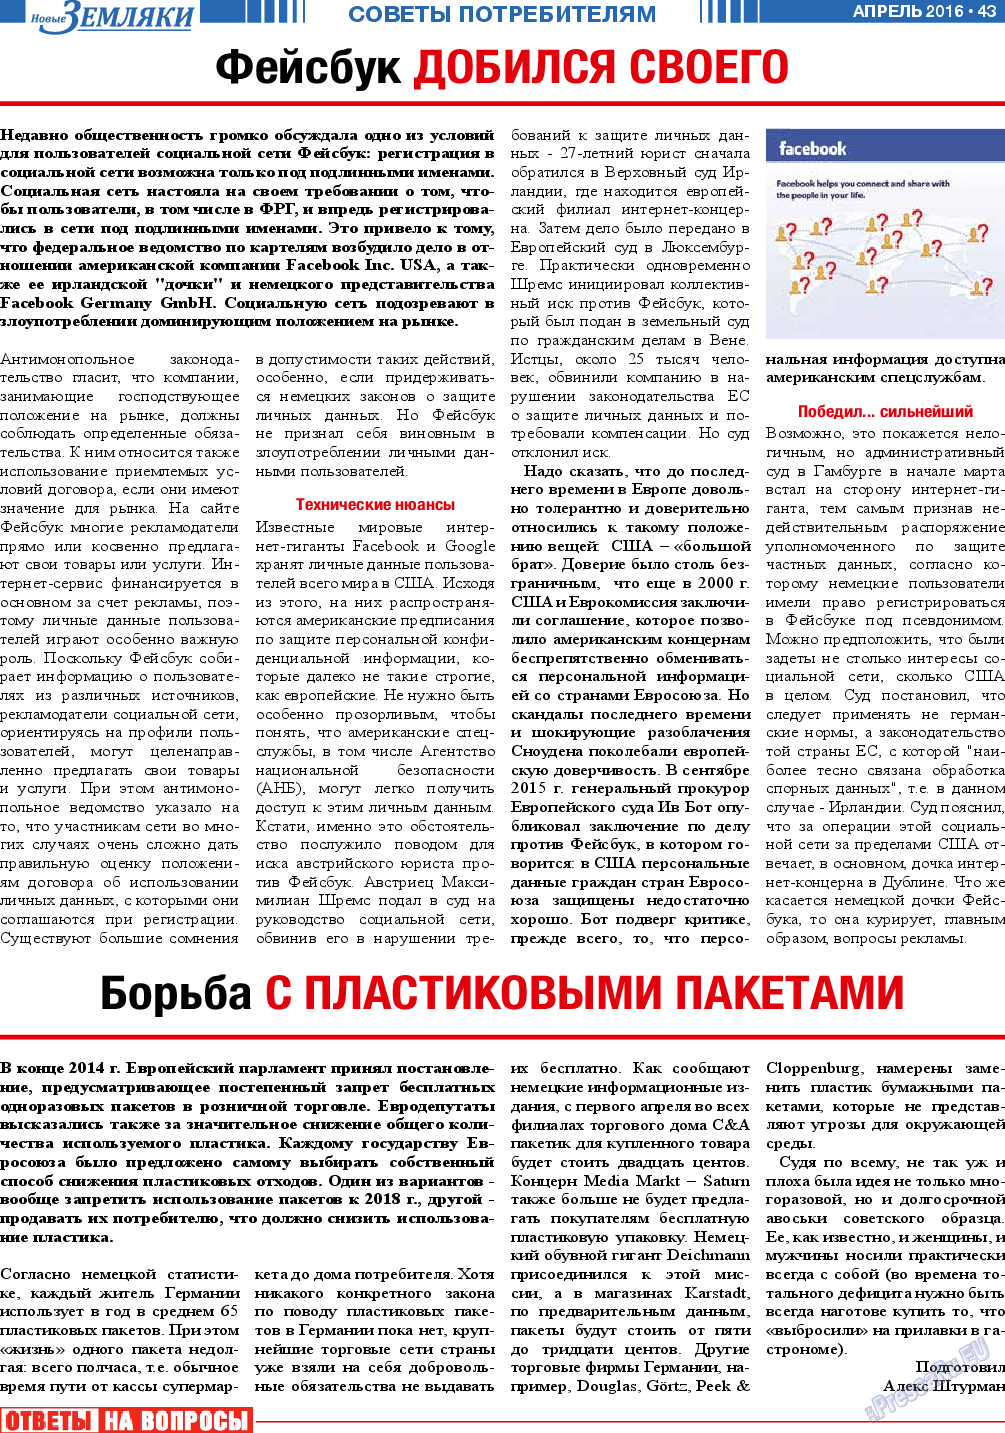 Новые Земляки, газета. 2016 №4 стр.43